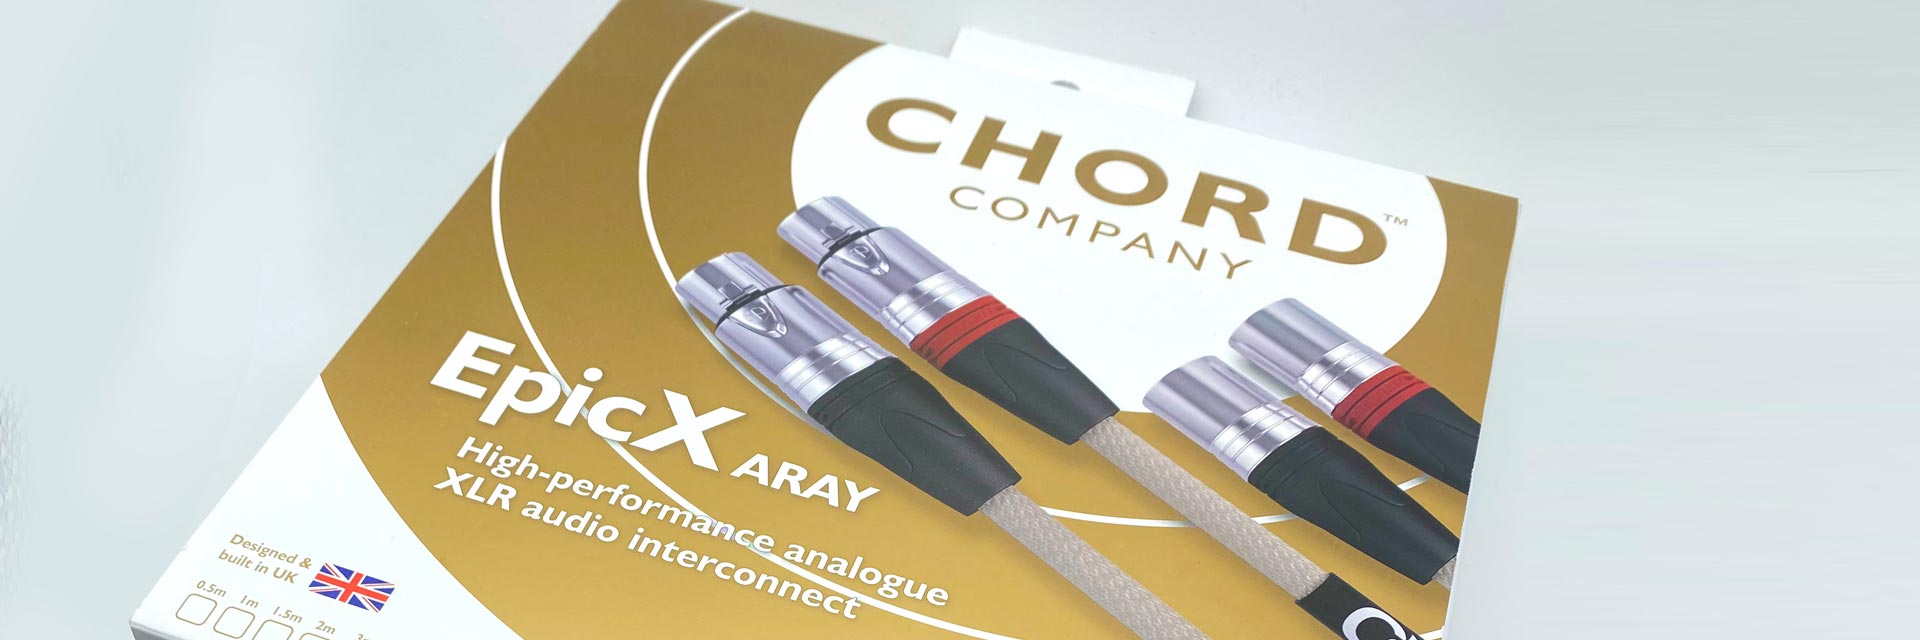 Chord Company EpicX ARAY